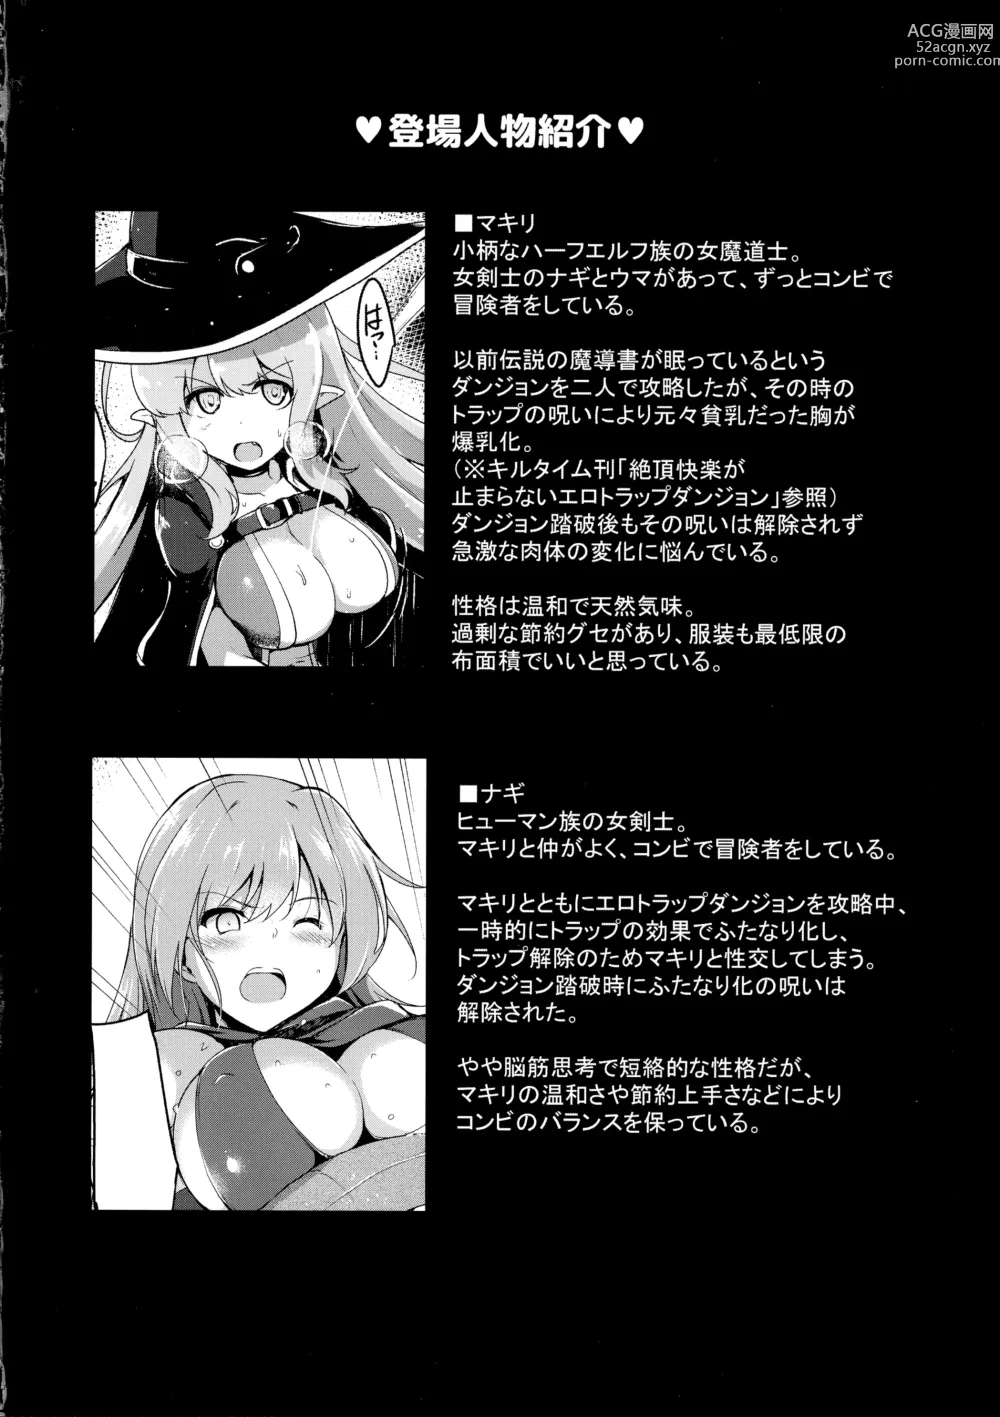 Page 4 of doujinshi Saihou no Ero Trap Dungeon